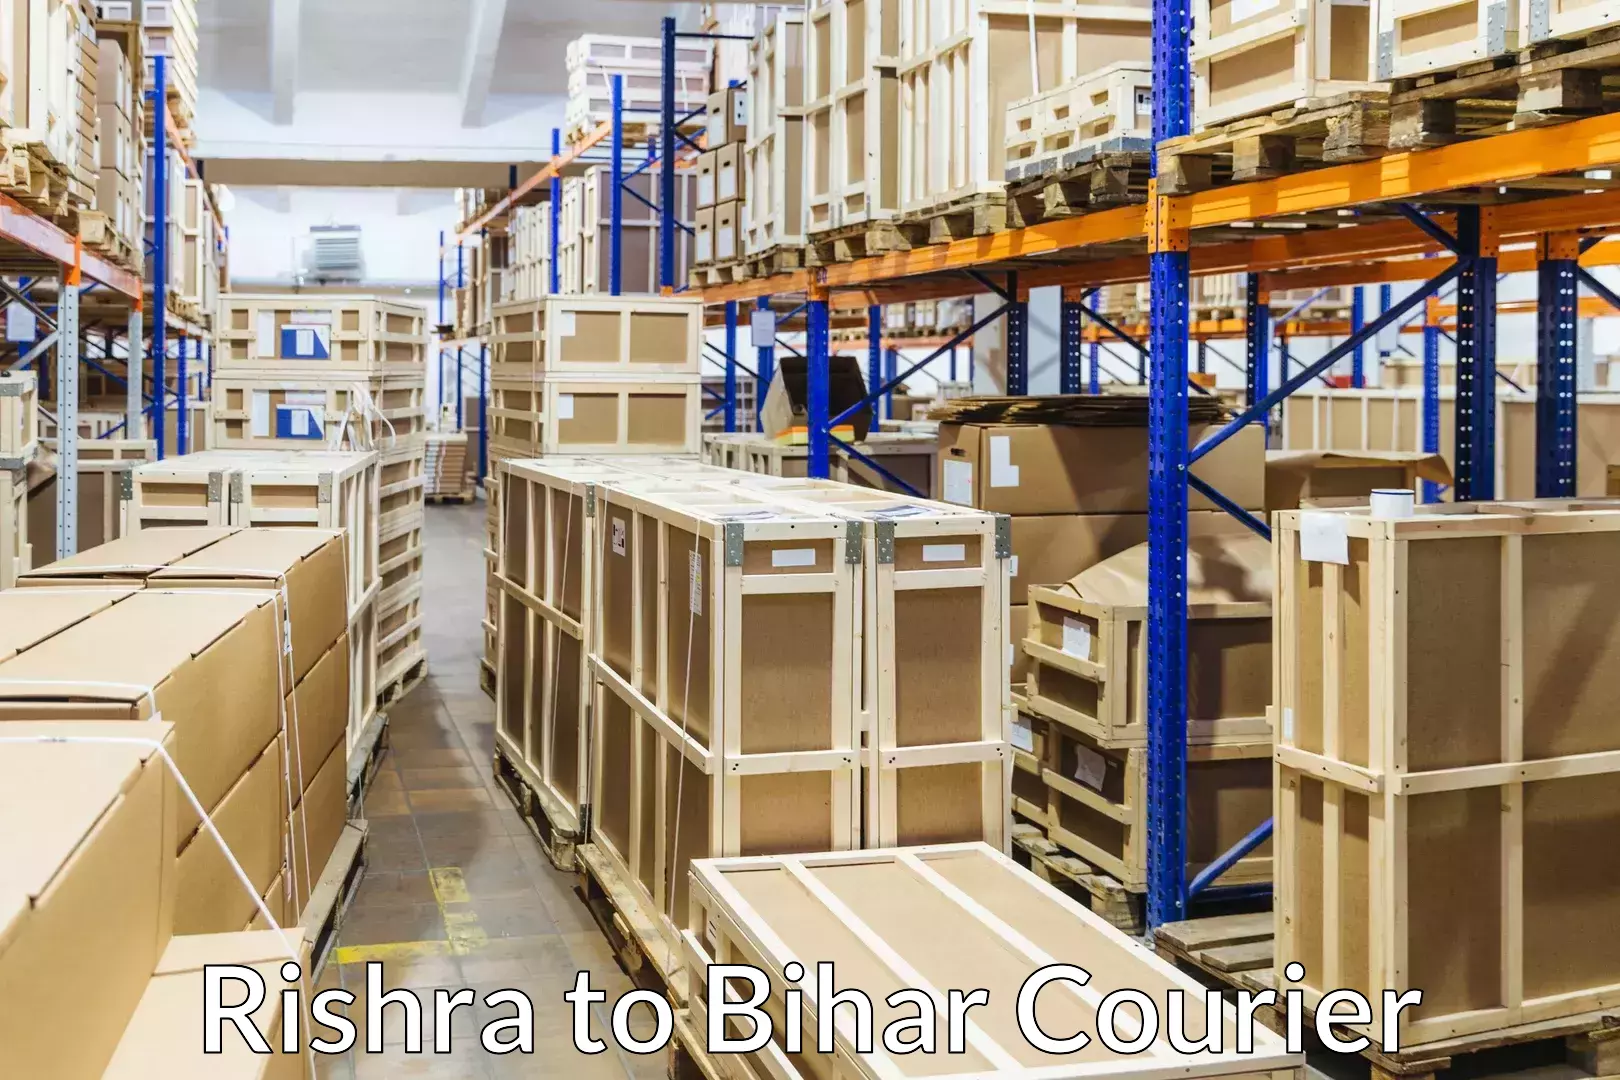 Furniture transport specialists Rishra to Giddha